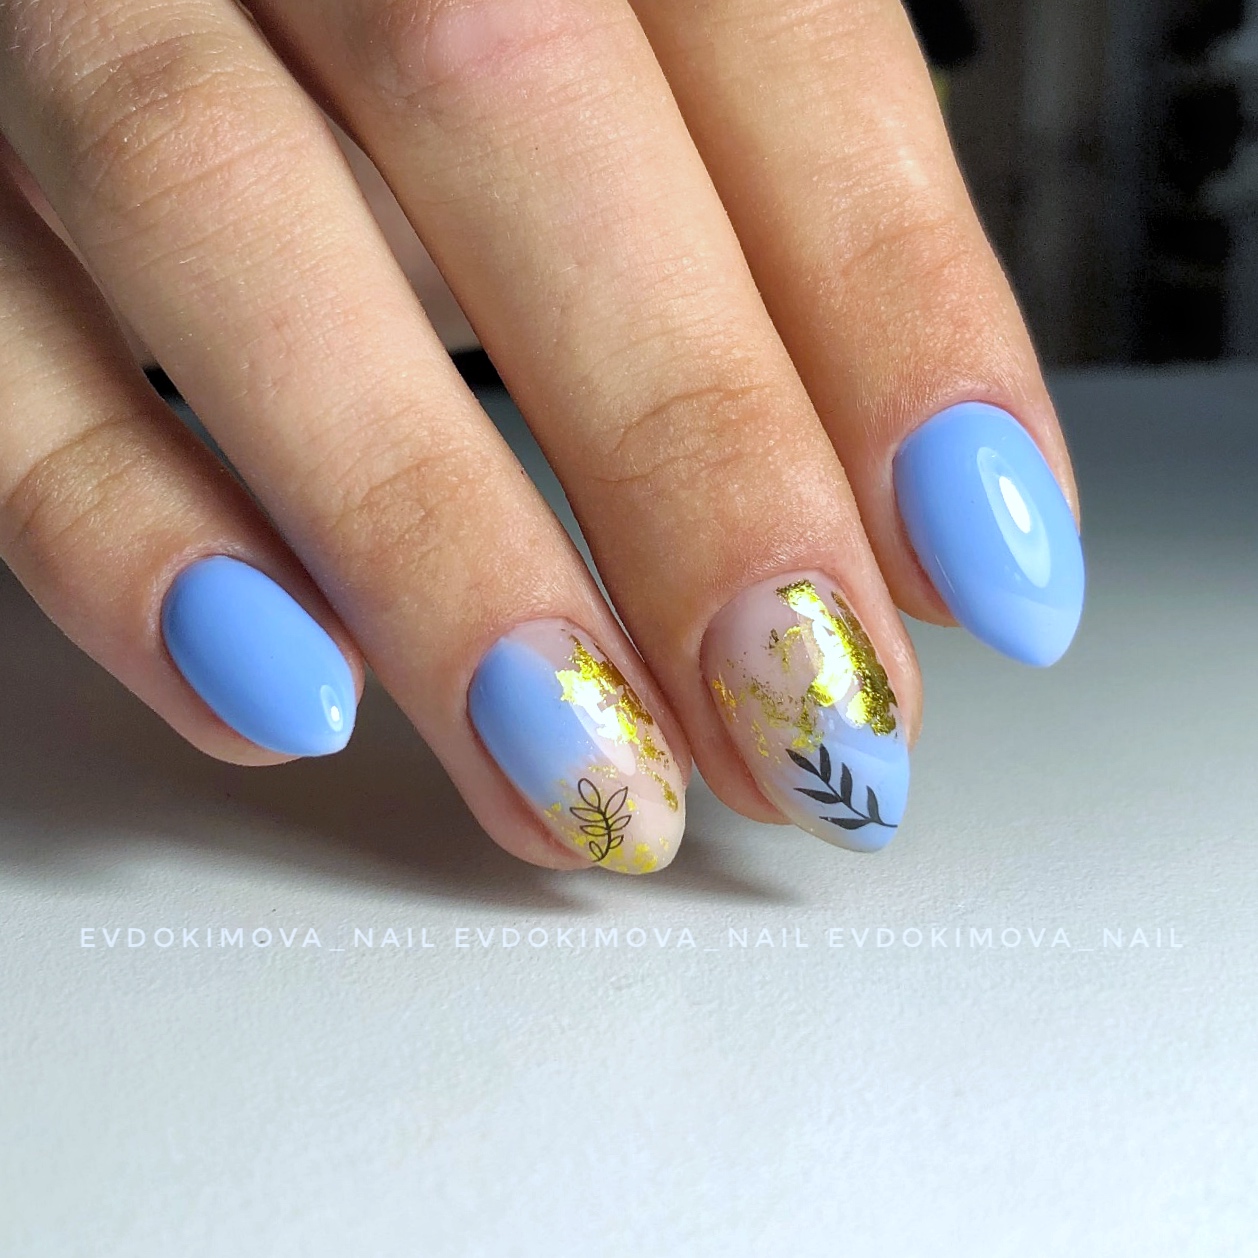 Маникюр с растительными слайдерами и золотой фольгой в голубом цвете на короткие ногти.